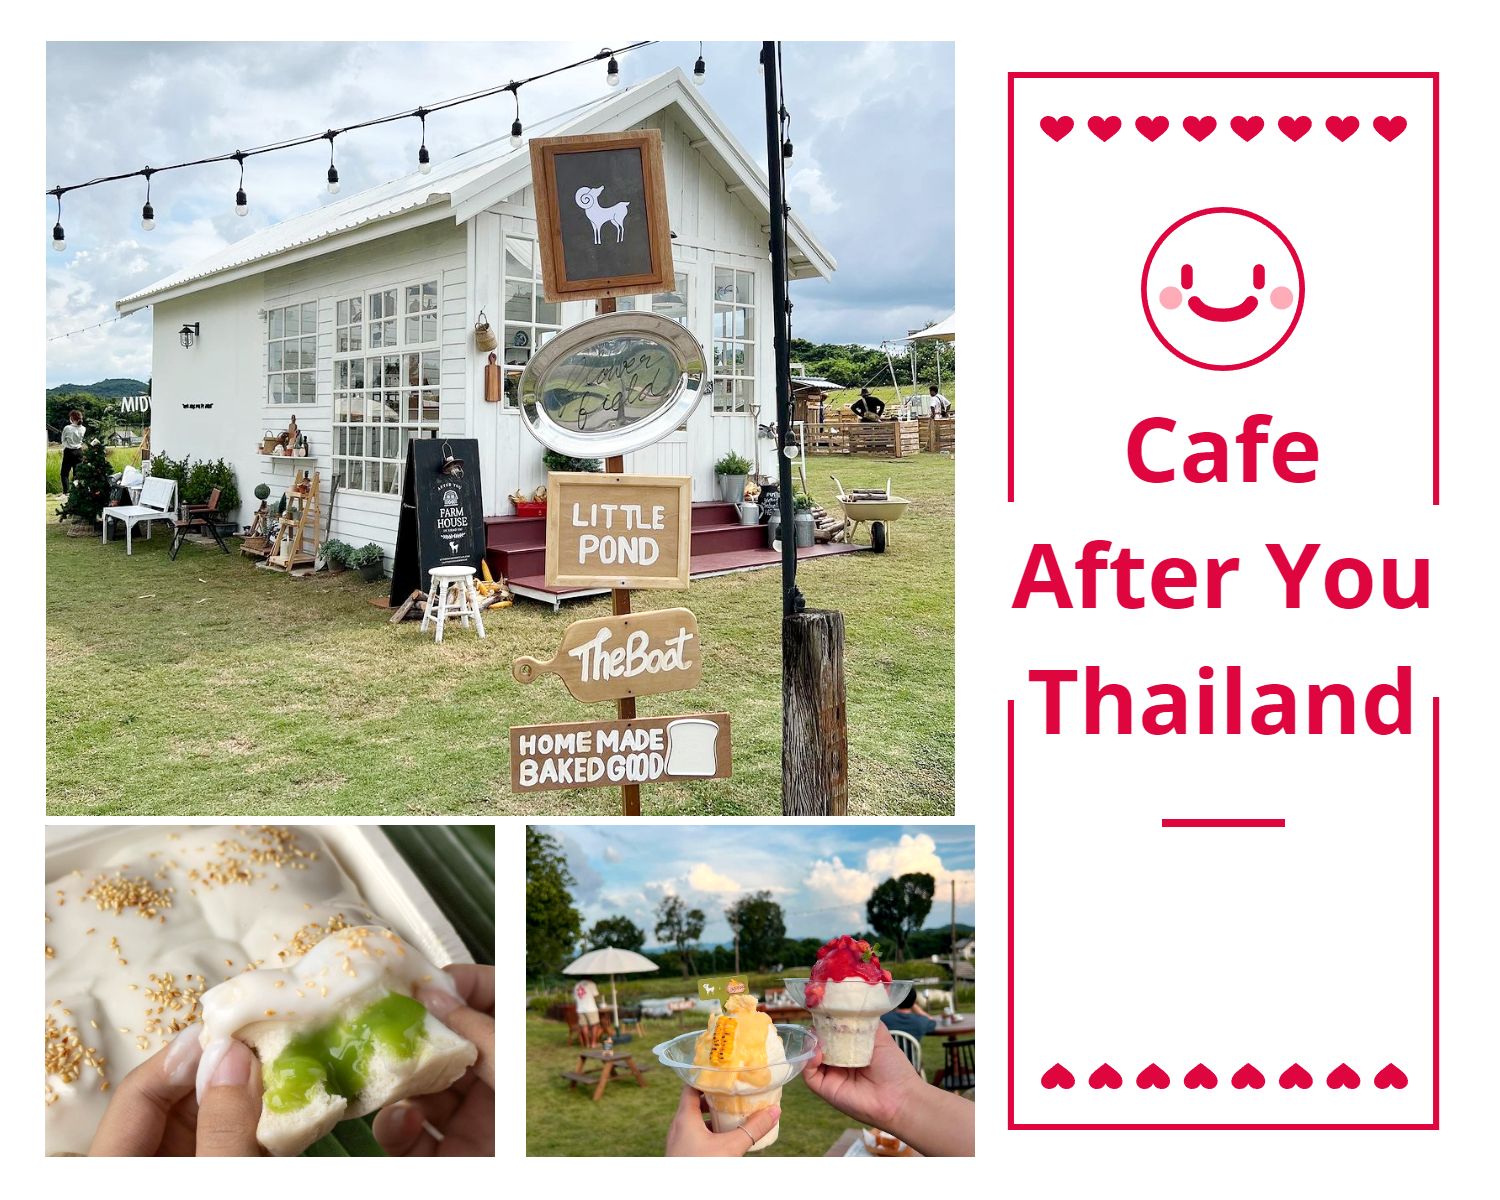 Cafe After You di Bangkok yang tengah viral dengan menu roti milk bun.